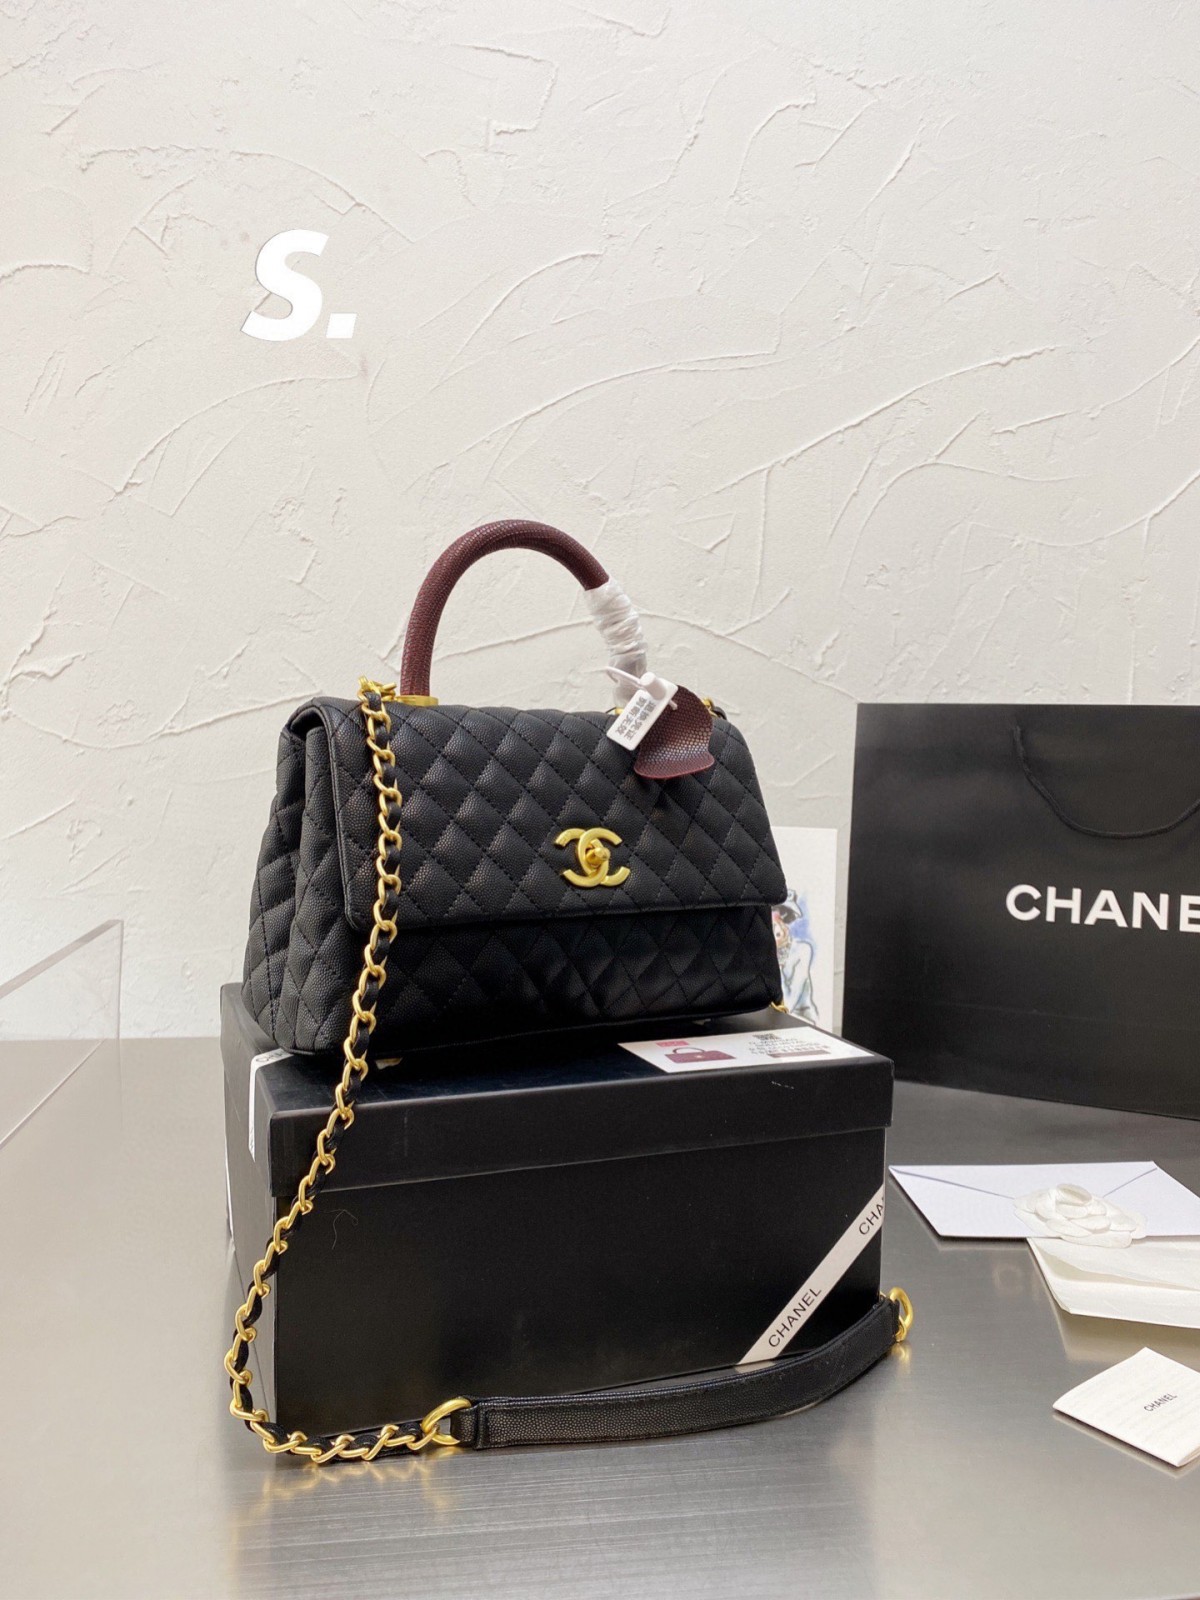 คุณภาพของกระเป๋าจำลอง Chanel Coco Handle นั้นเทียบเท่าของจริง! (ปรับปรุง 2022)-ร้านค้าออนไลน์กระเป๋า Louis Vuitton ปลอมคุณภาพดีที่สุด, กระเป๋าออกแบบจำลอง ru